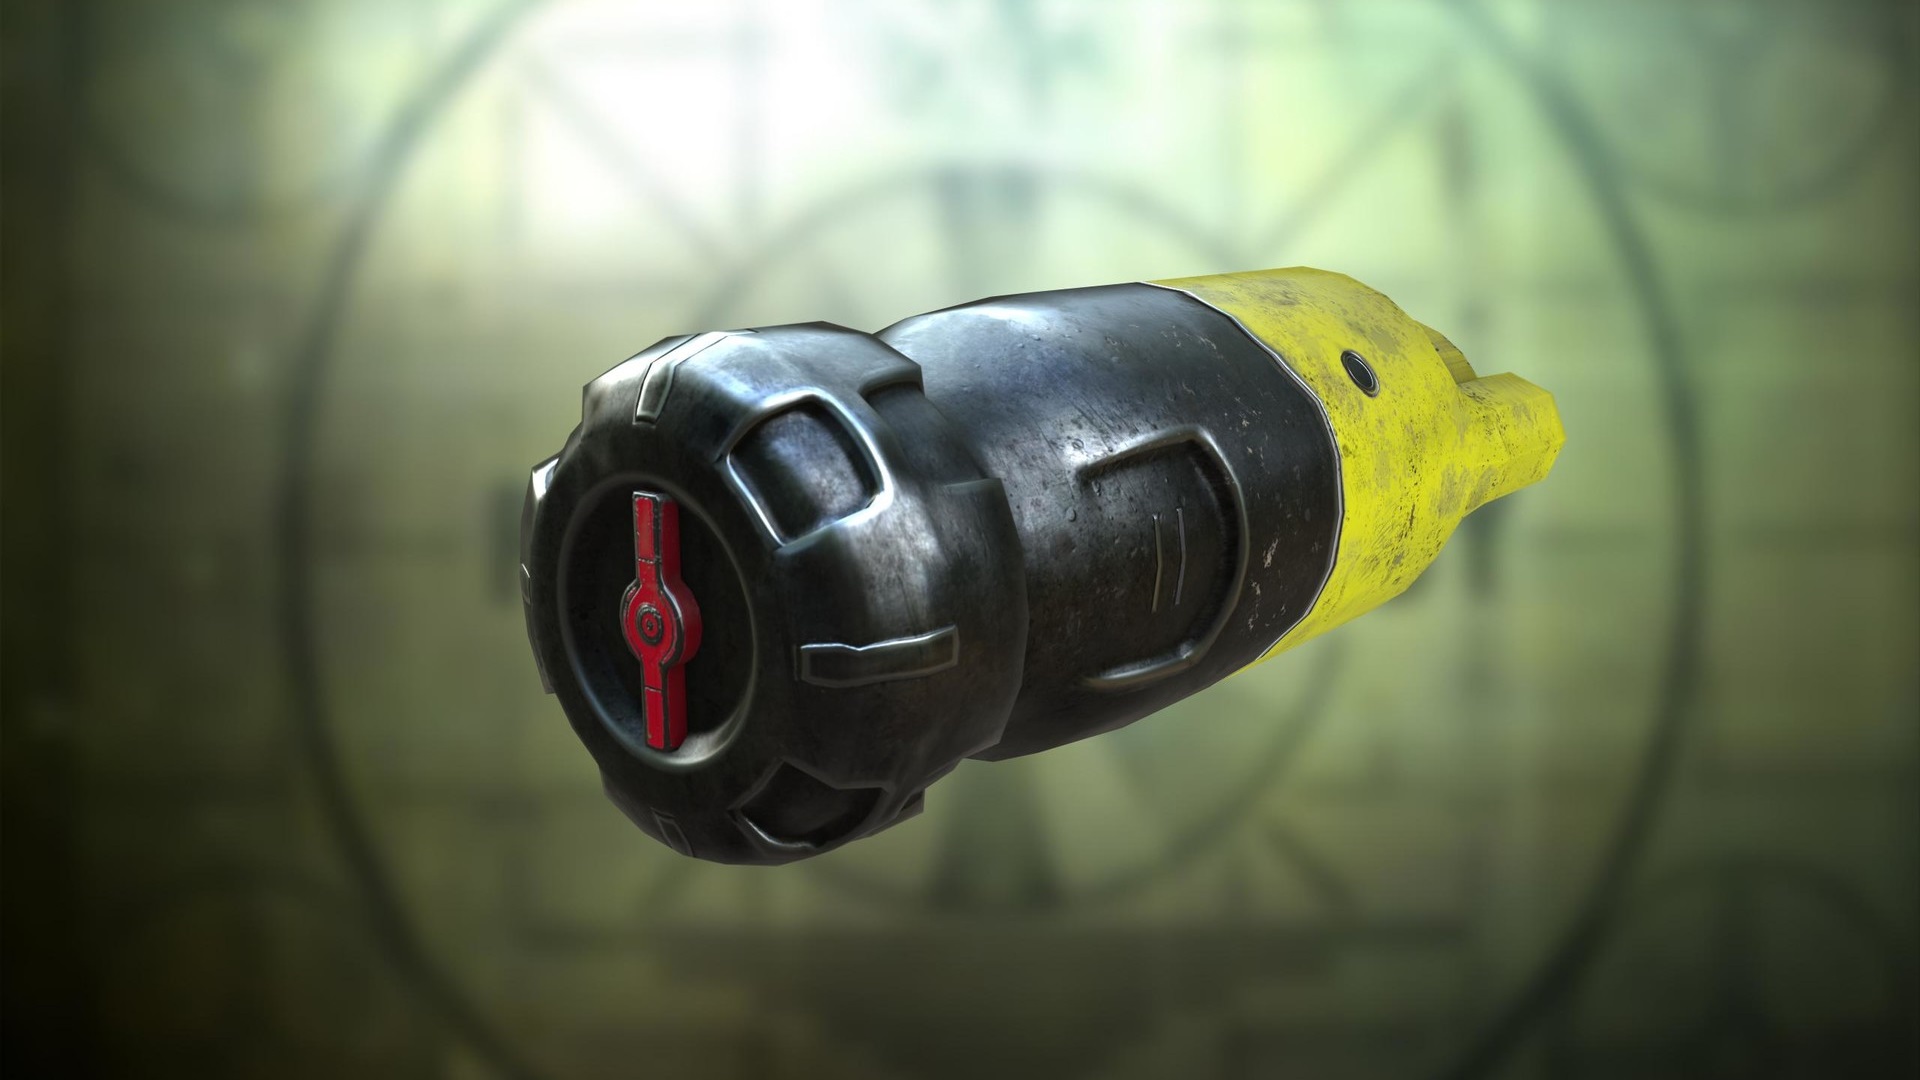 Fallout 76, dove trovare i Nuclei di Fusione